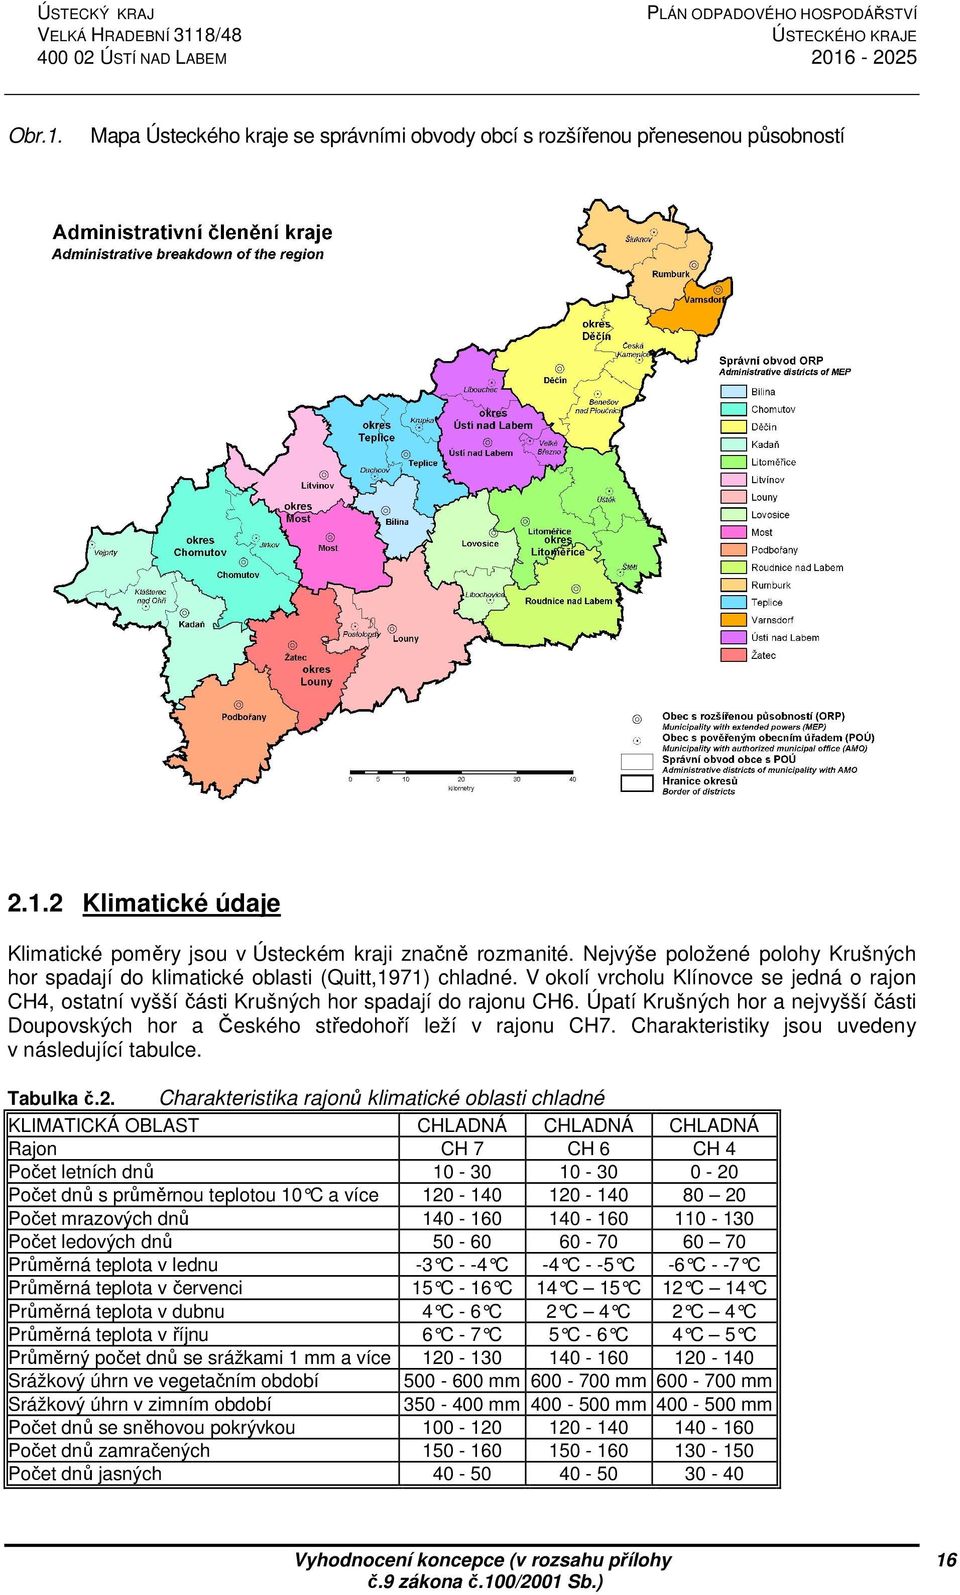 Úpatí Krušných hor a nejvyšší části Doupovských hor a Českého středohoří leží v rajonu CH7. Charakteristiky jsou uvedeny v následující tabulce. Tabulka č.2.